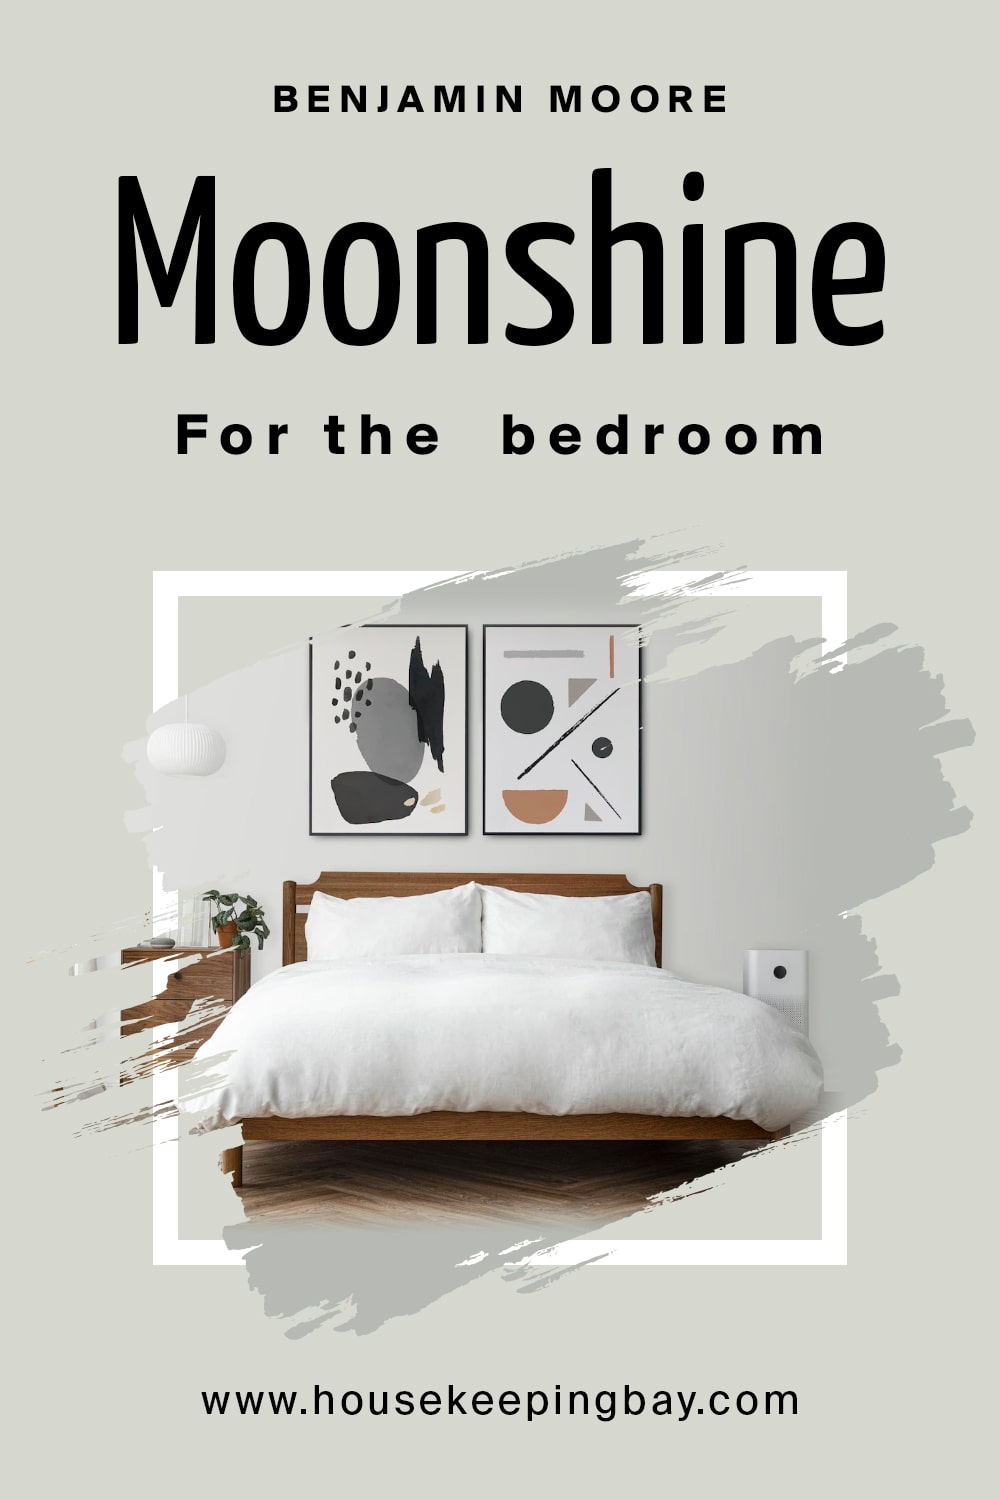 Benjamin Moore. Moonshine for the bedroom